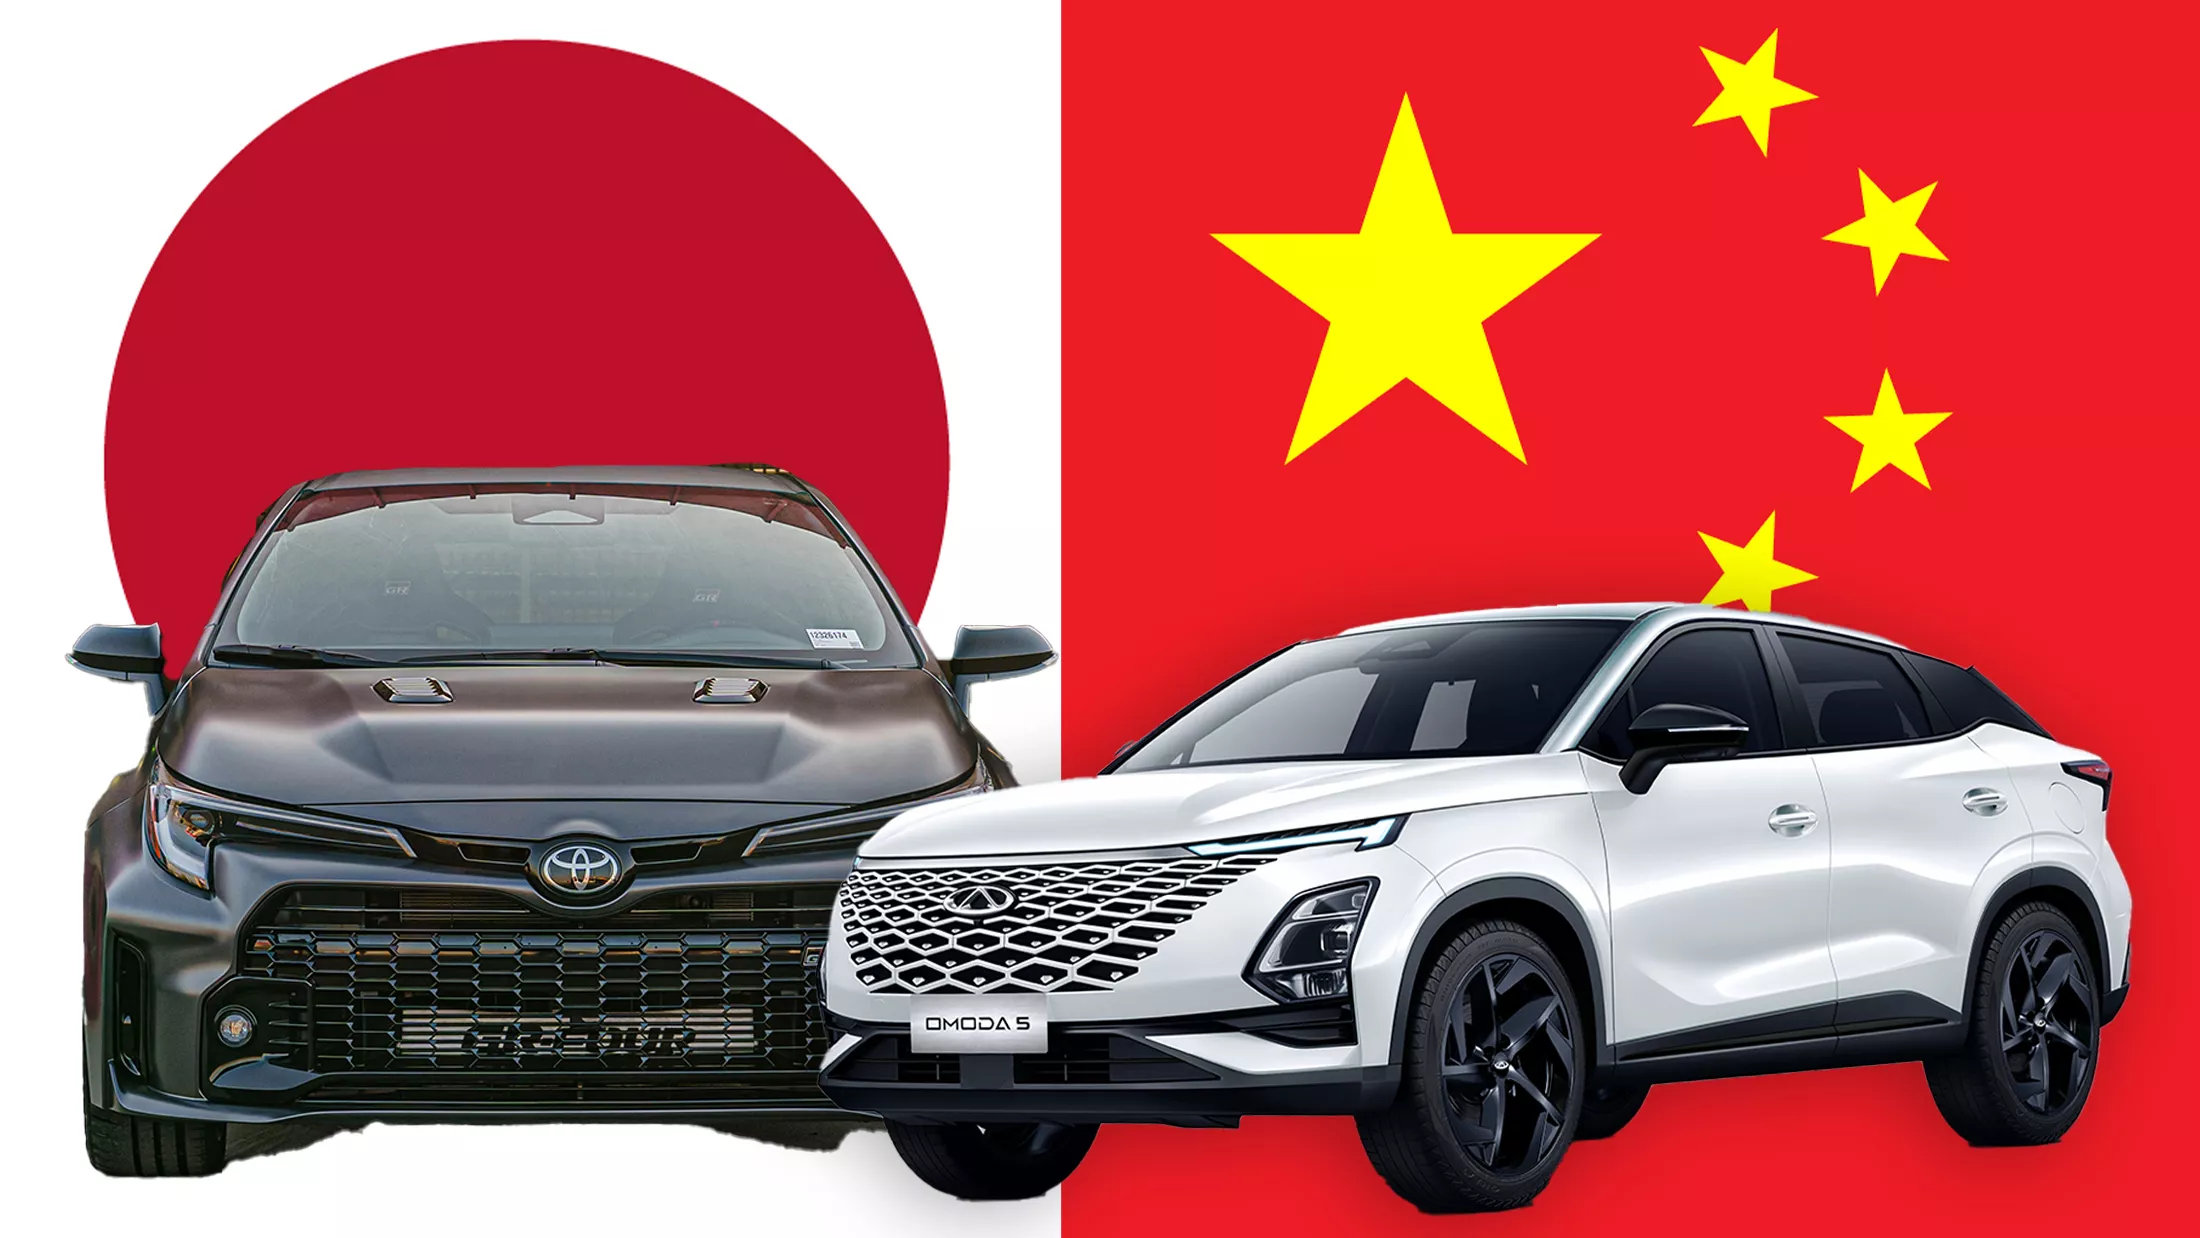 Trung Quốc sắp vượt Nhật, trở thành nước xuất khẩu ô tô hàng đầu thế giới